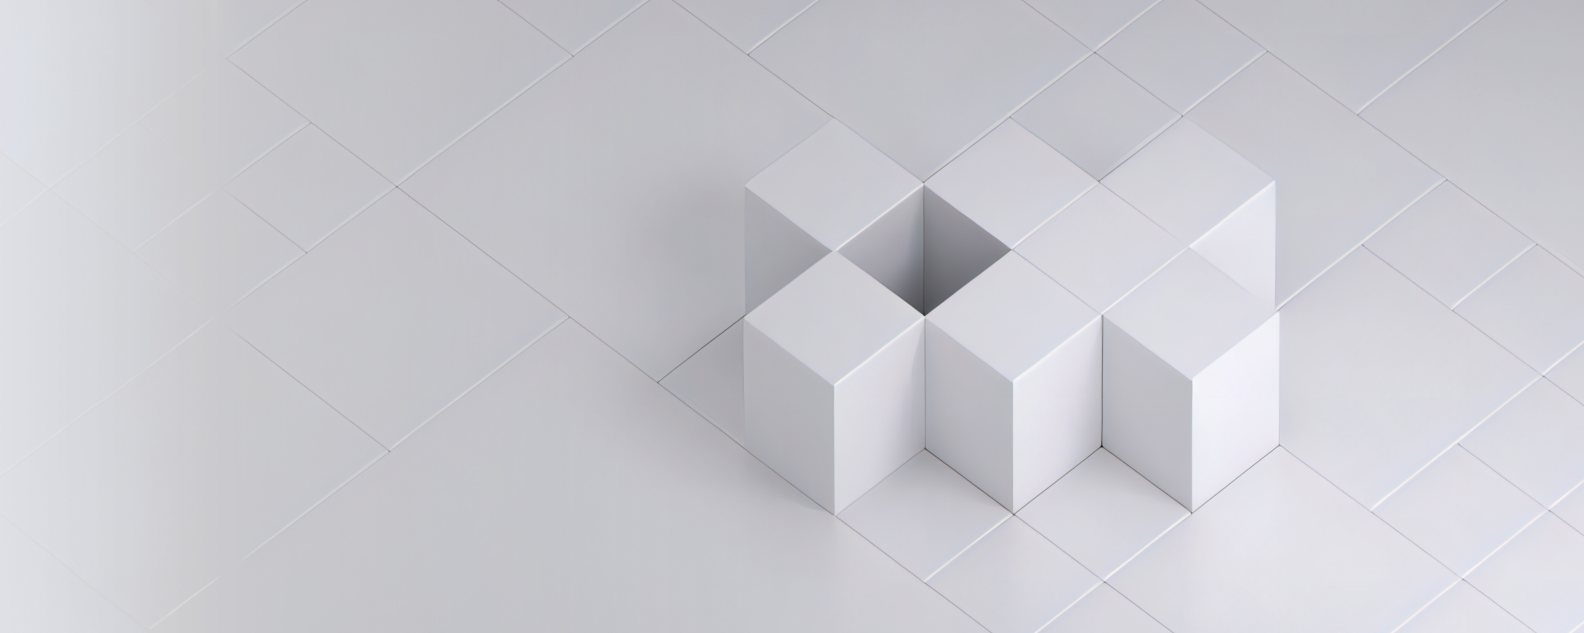 Image ou photo réaliste de sept cubes blancs disposés sur une grille blanche de carrés formant un motif